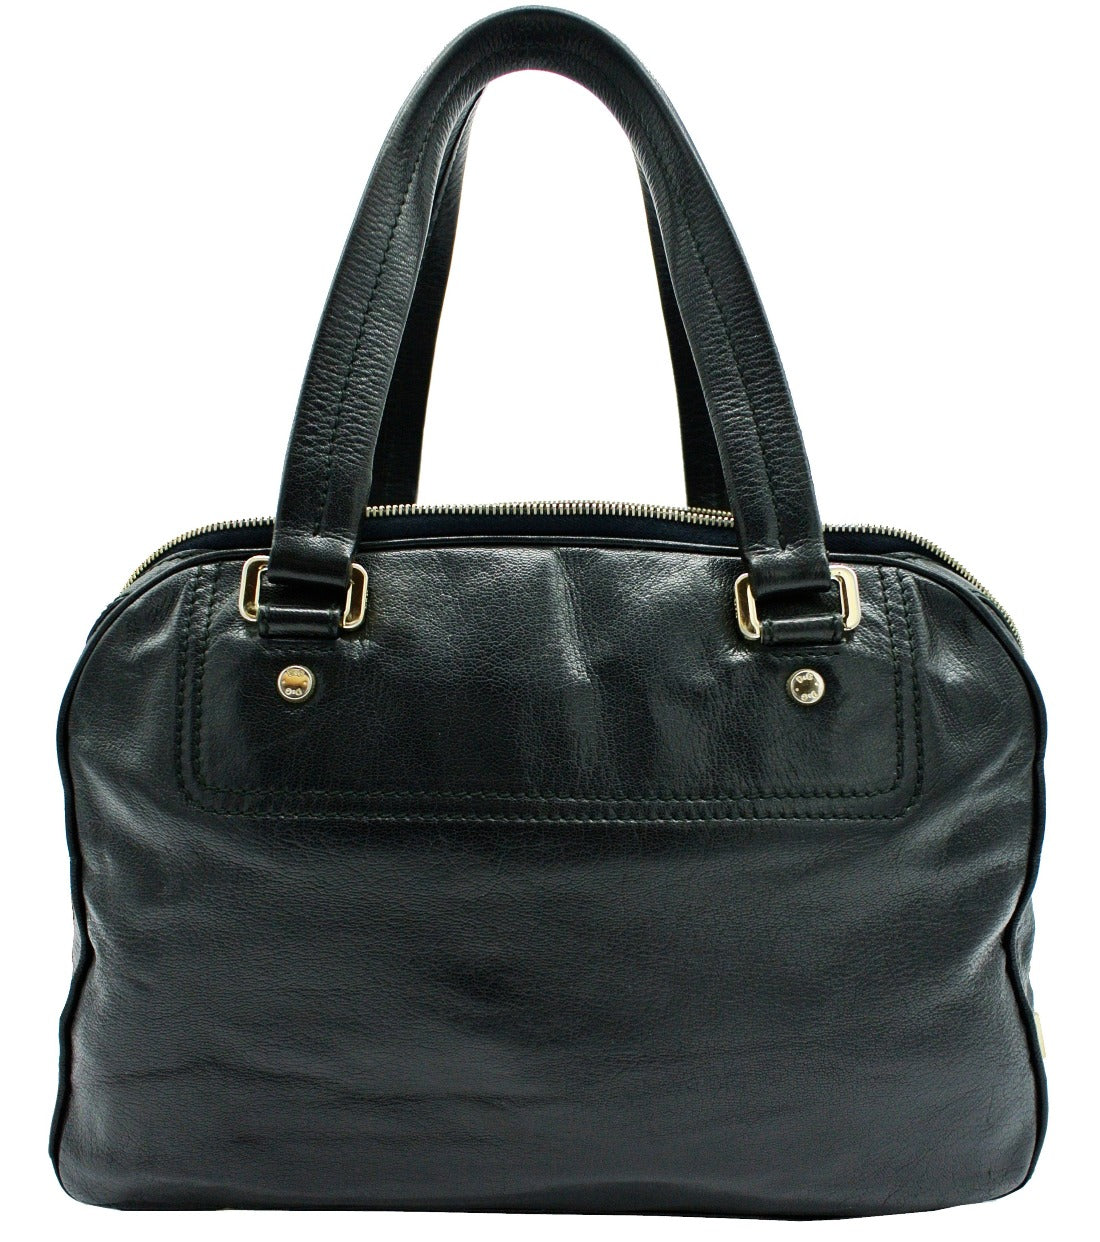 D & G Black Leather Bag Vilma Shoulder Bag Bag Dolce & Gabbana